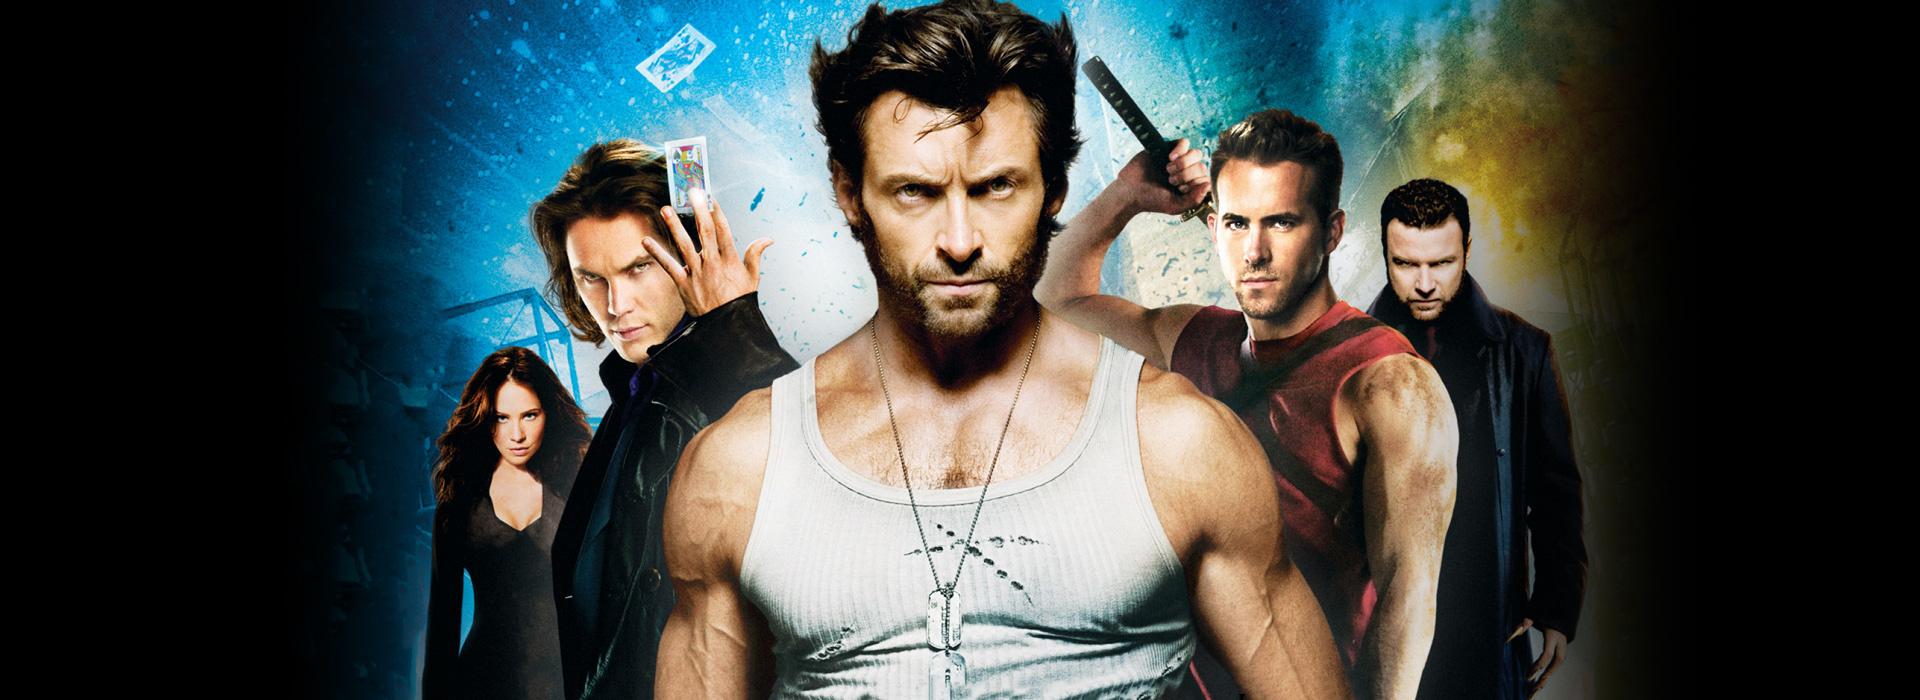 Movie poster X-Men Origins: Wolverine